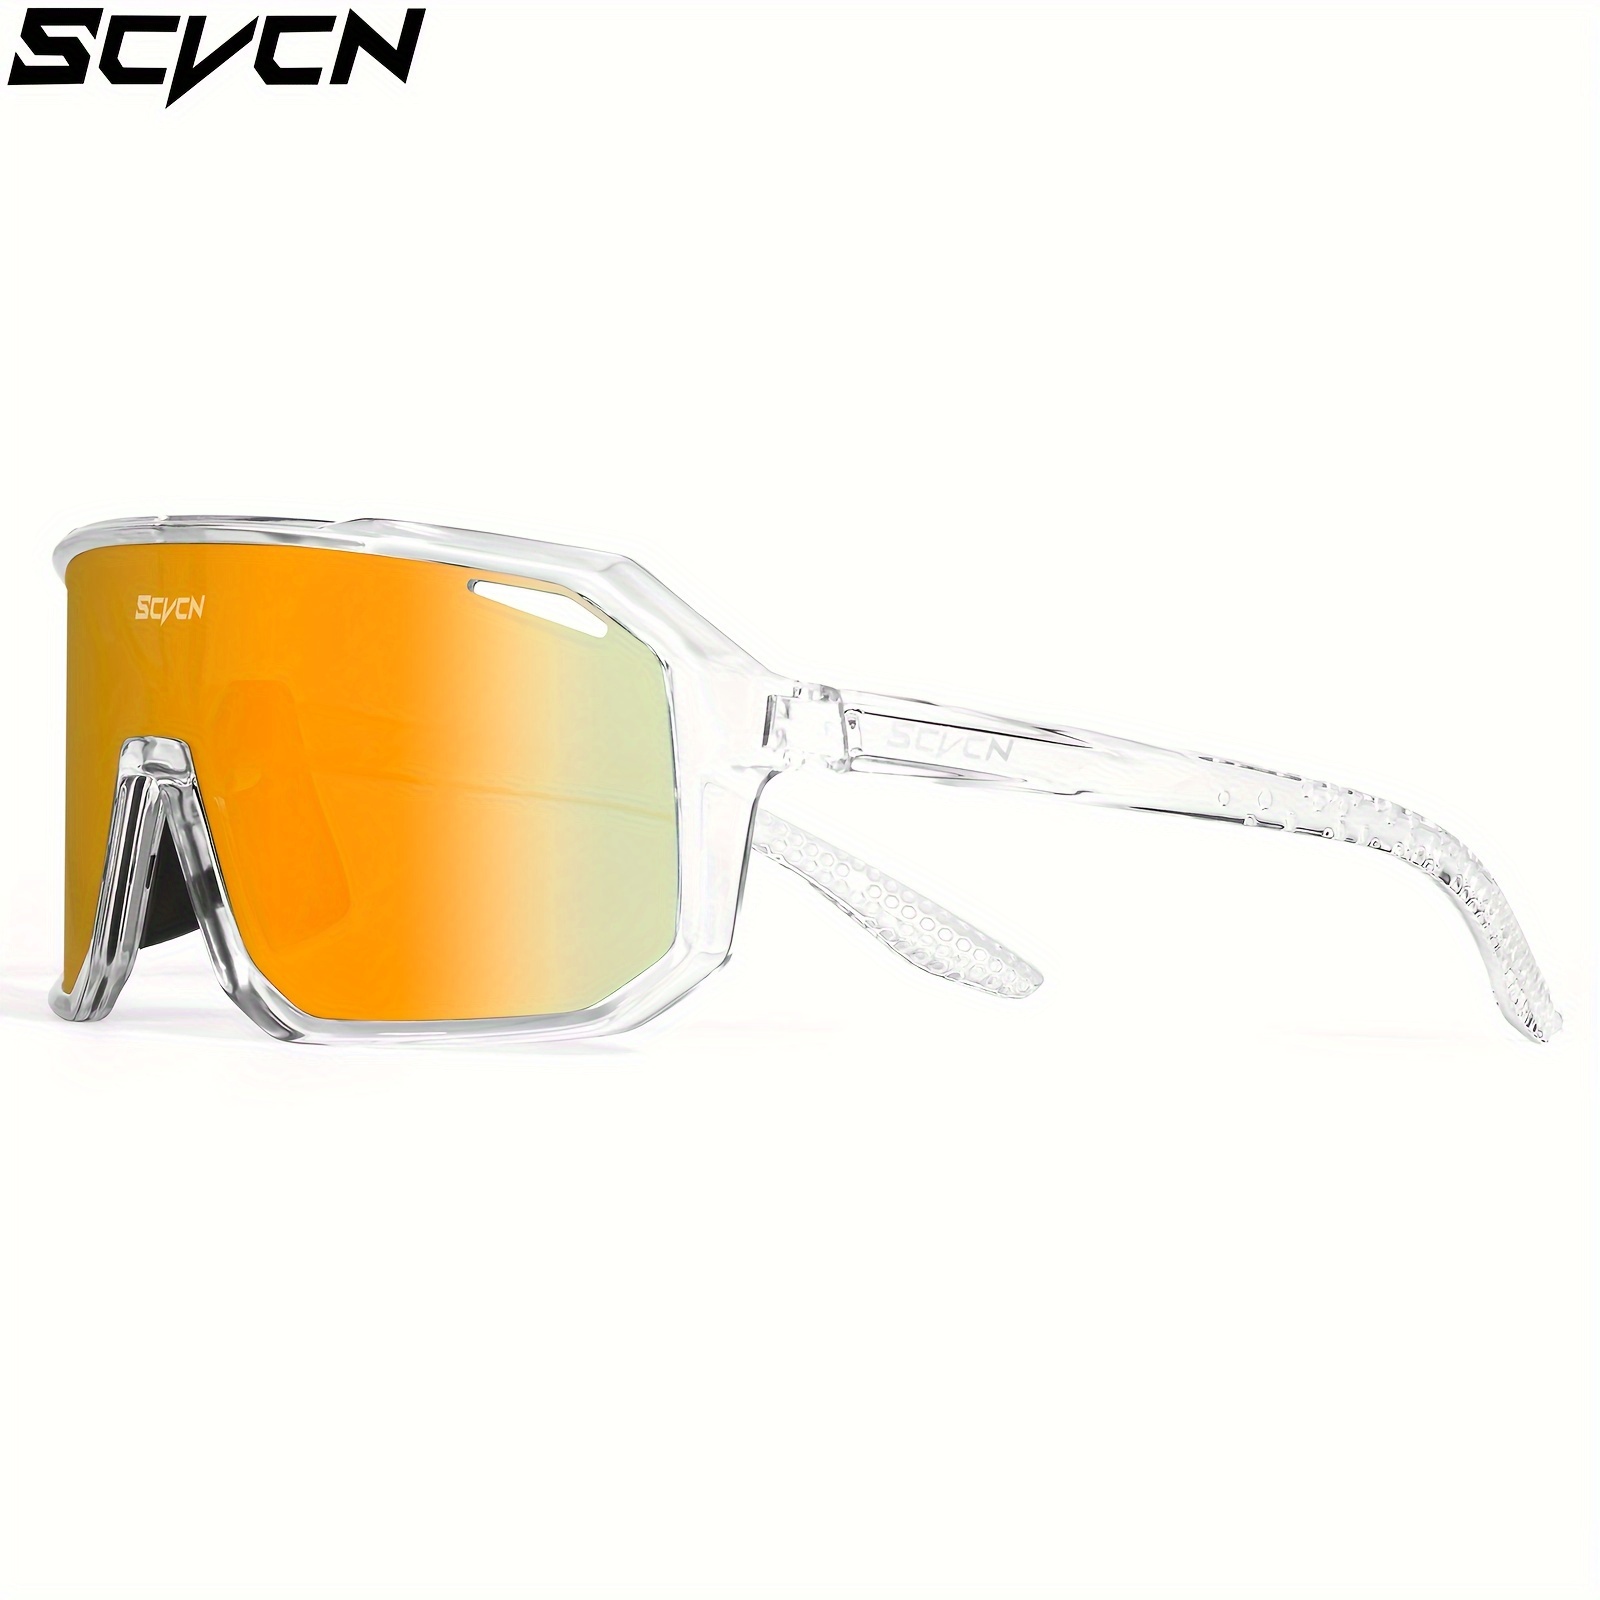 Scvcn 1 Lens Bike Sunglasses Men Women Ideal Cycling Running